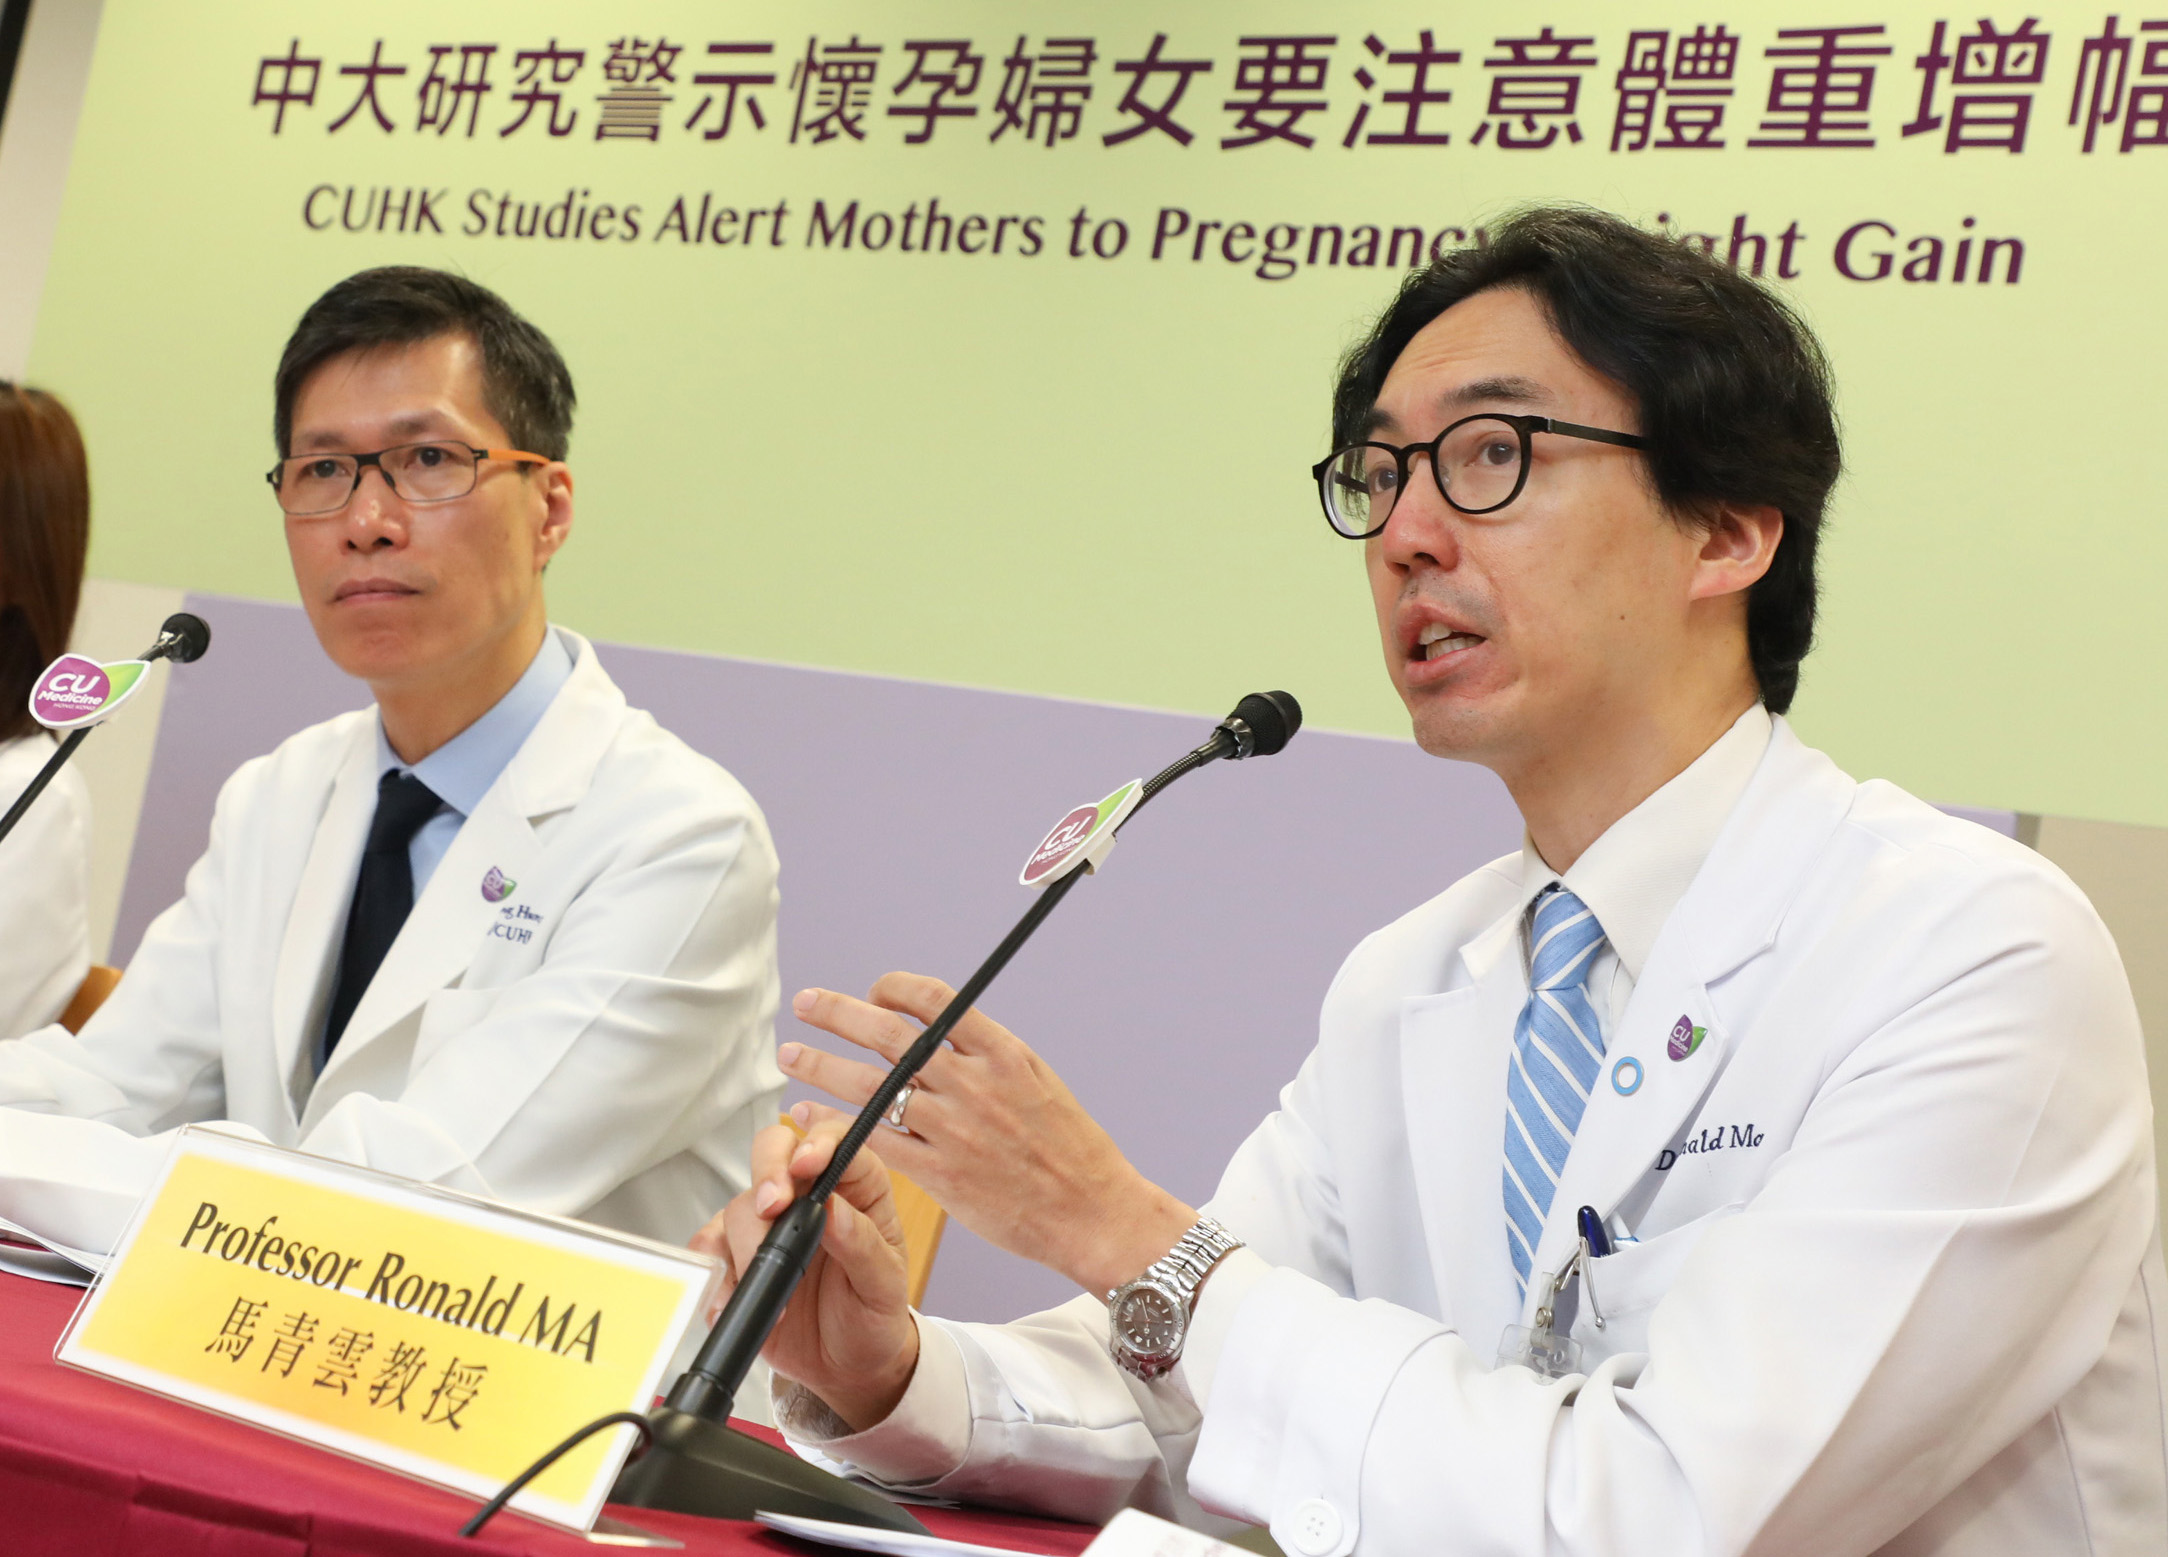 馬青雲教授（右）警示準媽媽們要注意控制體重，並在懷孕期間保持健康的飲食和生活方式，以預防患上妊娠糖尿病。